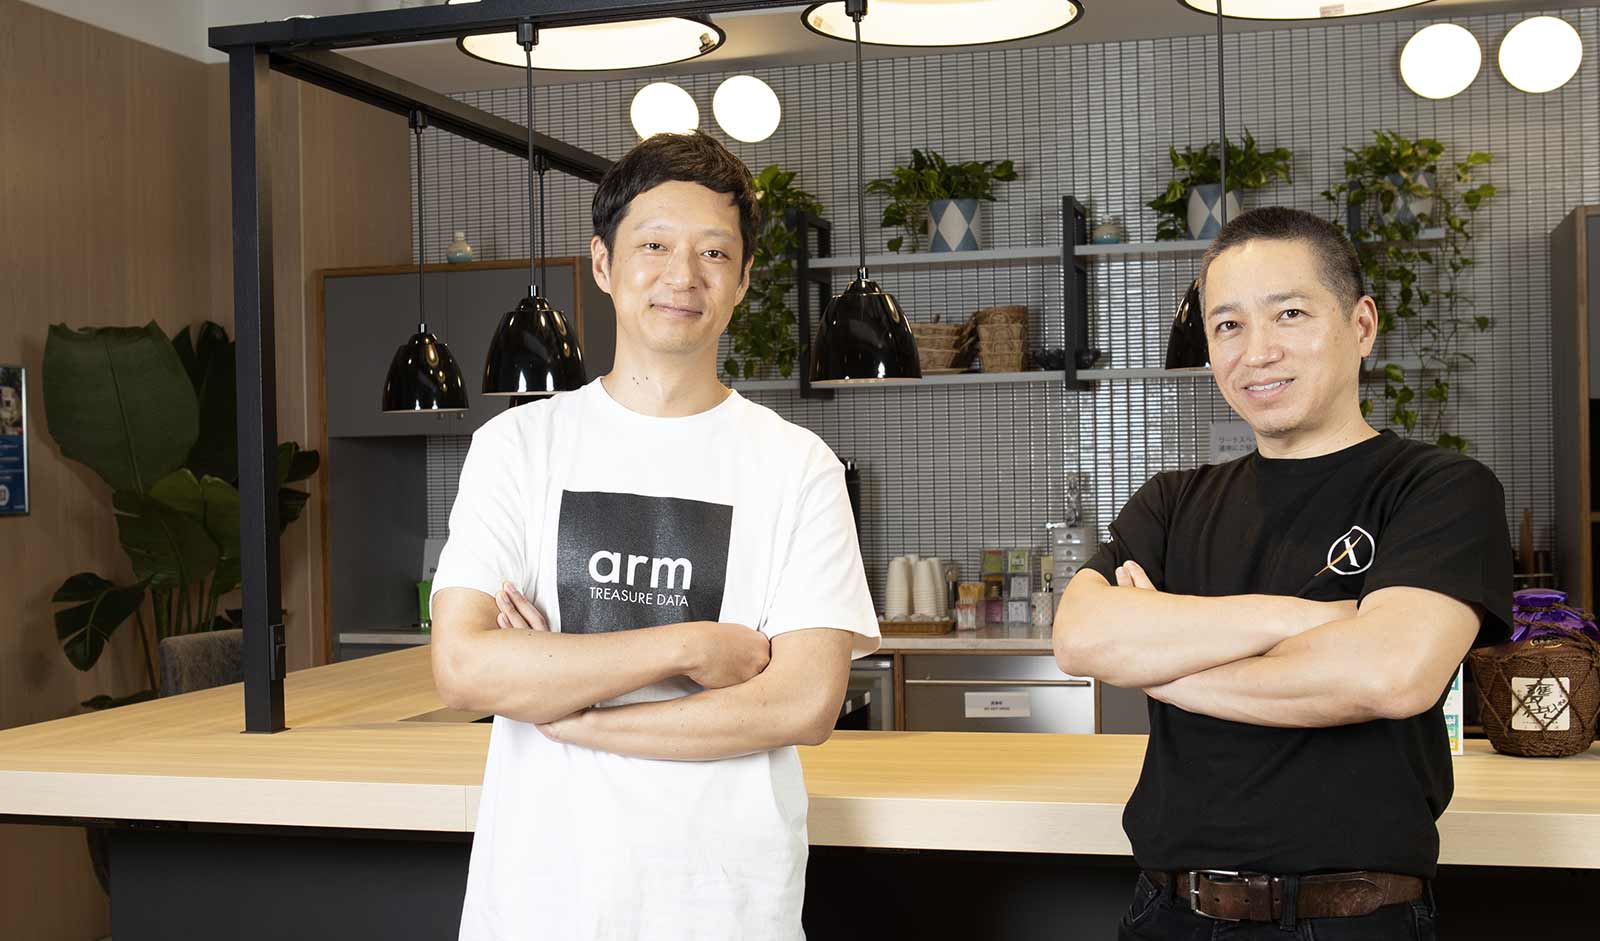 X-TANKコンサルティング CEO 伊藤嘉明氏(右)、トレジャーデータ株式会社 エバンジェリスト 若原強(左)